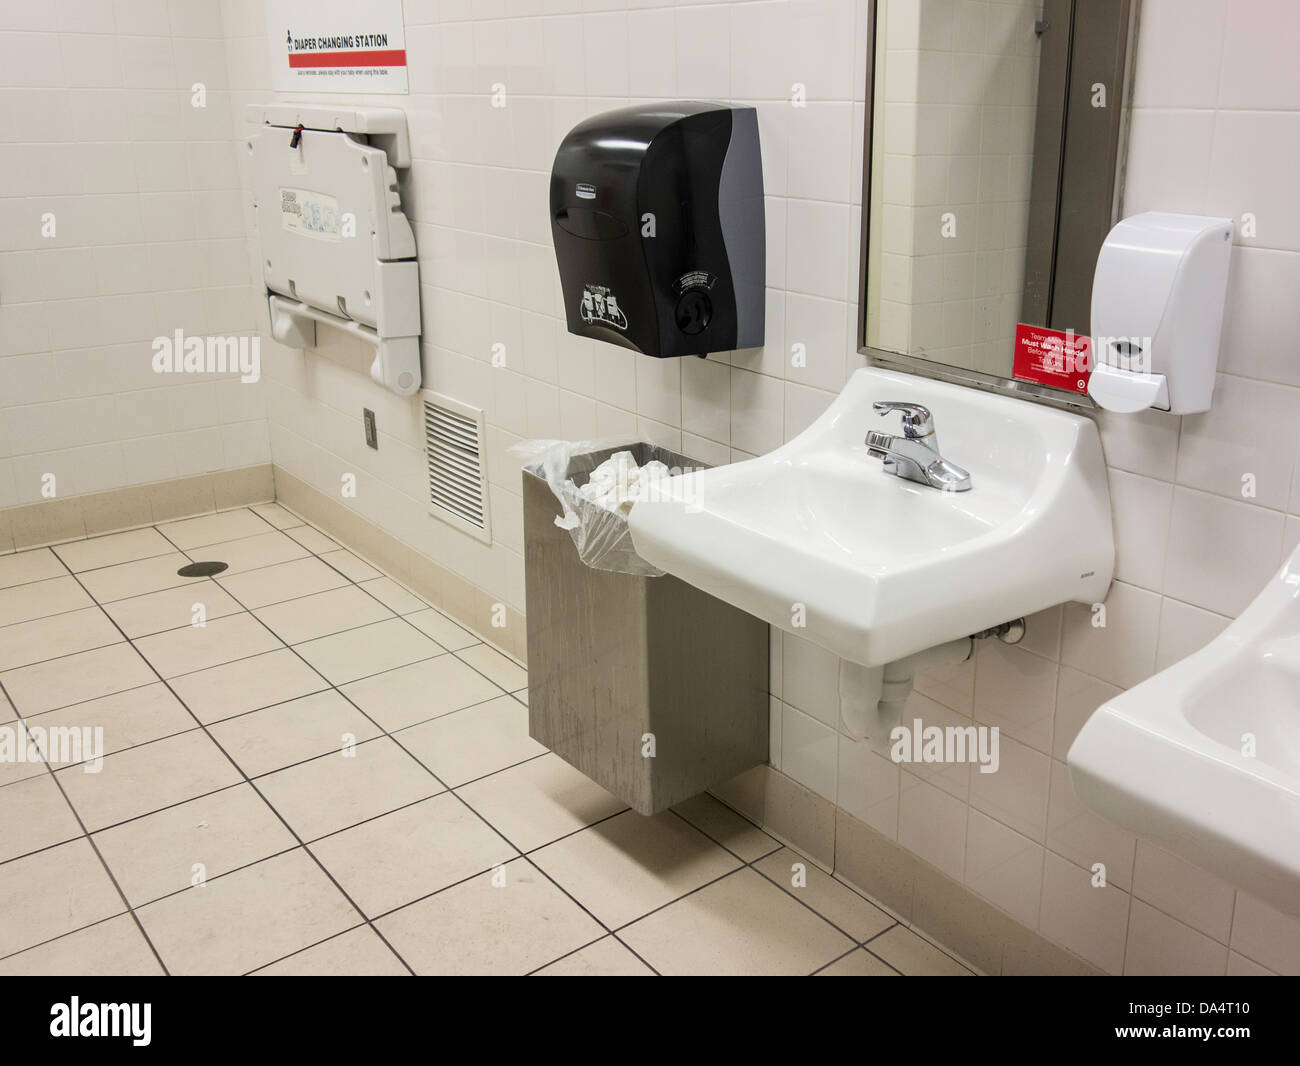 Öffentliches Bad in einem Einkaufszentrum, Toiletten, Seifenspender und Spiegel. Oklahoma City, Oklahoma, USA. Stockfoto